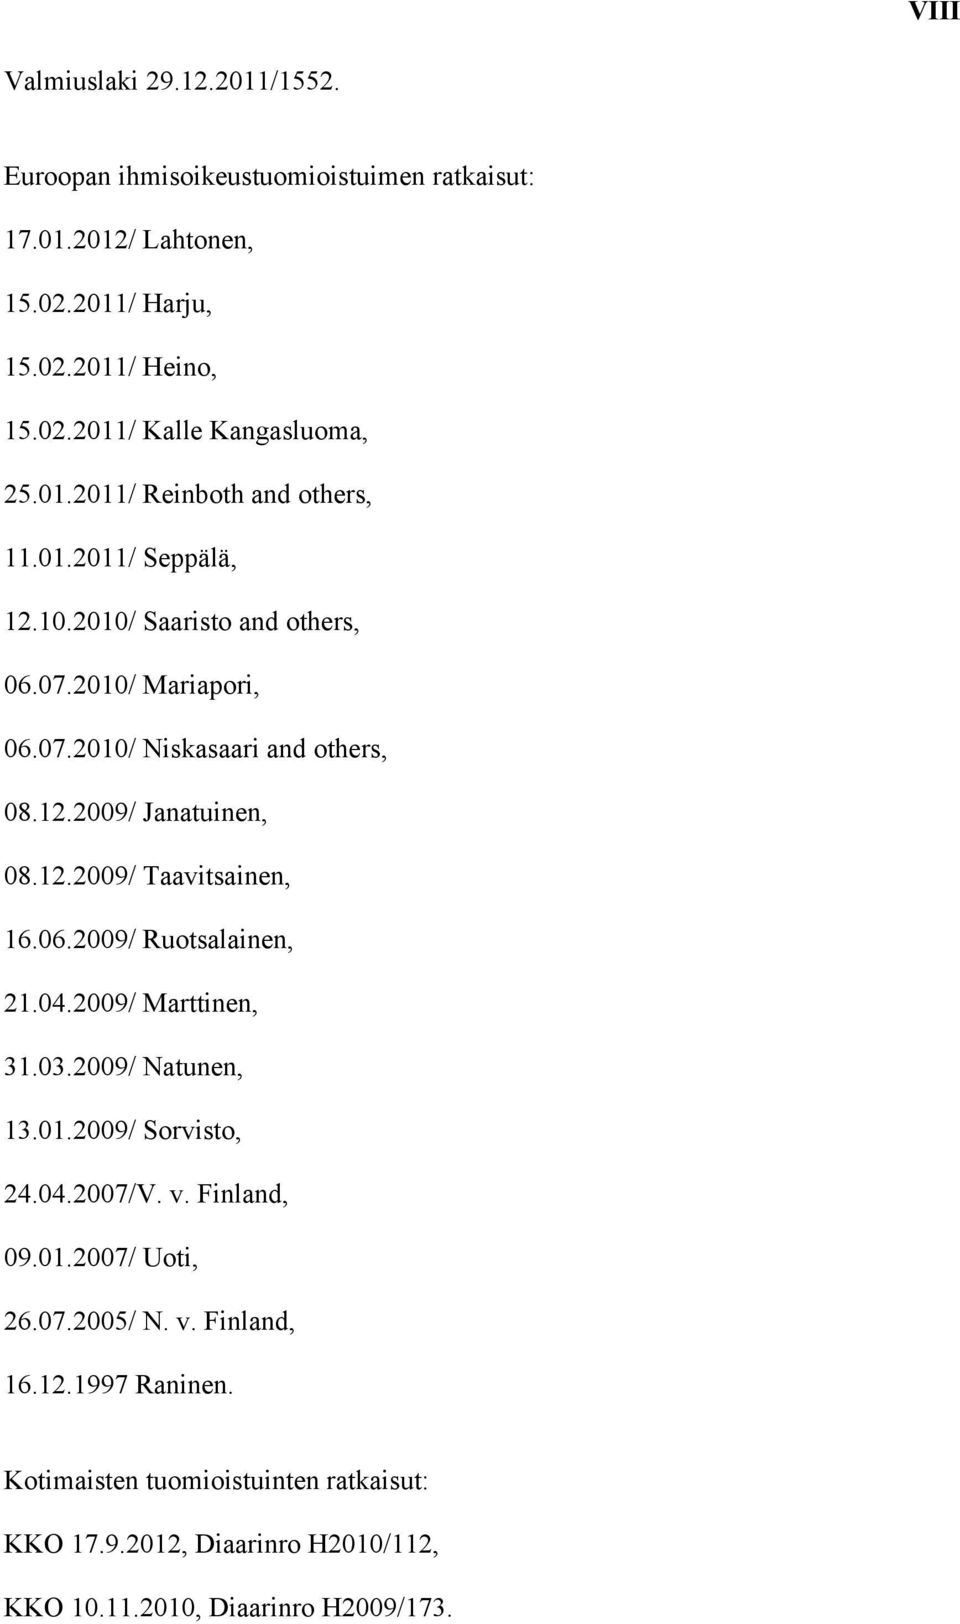 12.2009/ Taavitsainen, 16.06.2009/ Ruotsalainen, 21.04.2009/ Marttinen, 31.03.2009/ Natunen, 13.01.2009/ Sorvisto, 24.04.2007/V. v. Finland, 09.01.2007/ Uoti, 26.07.2005/ N.